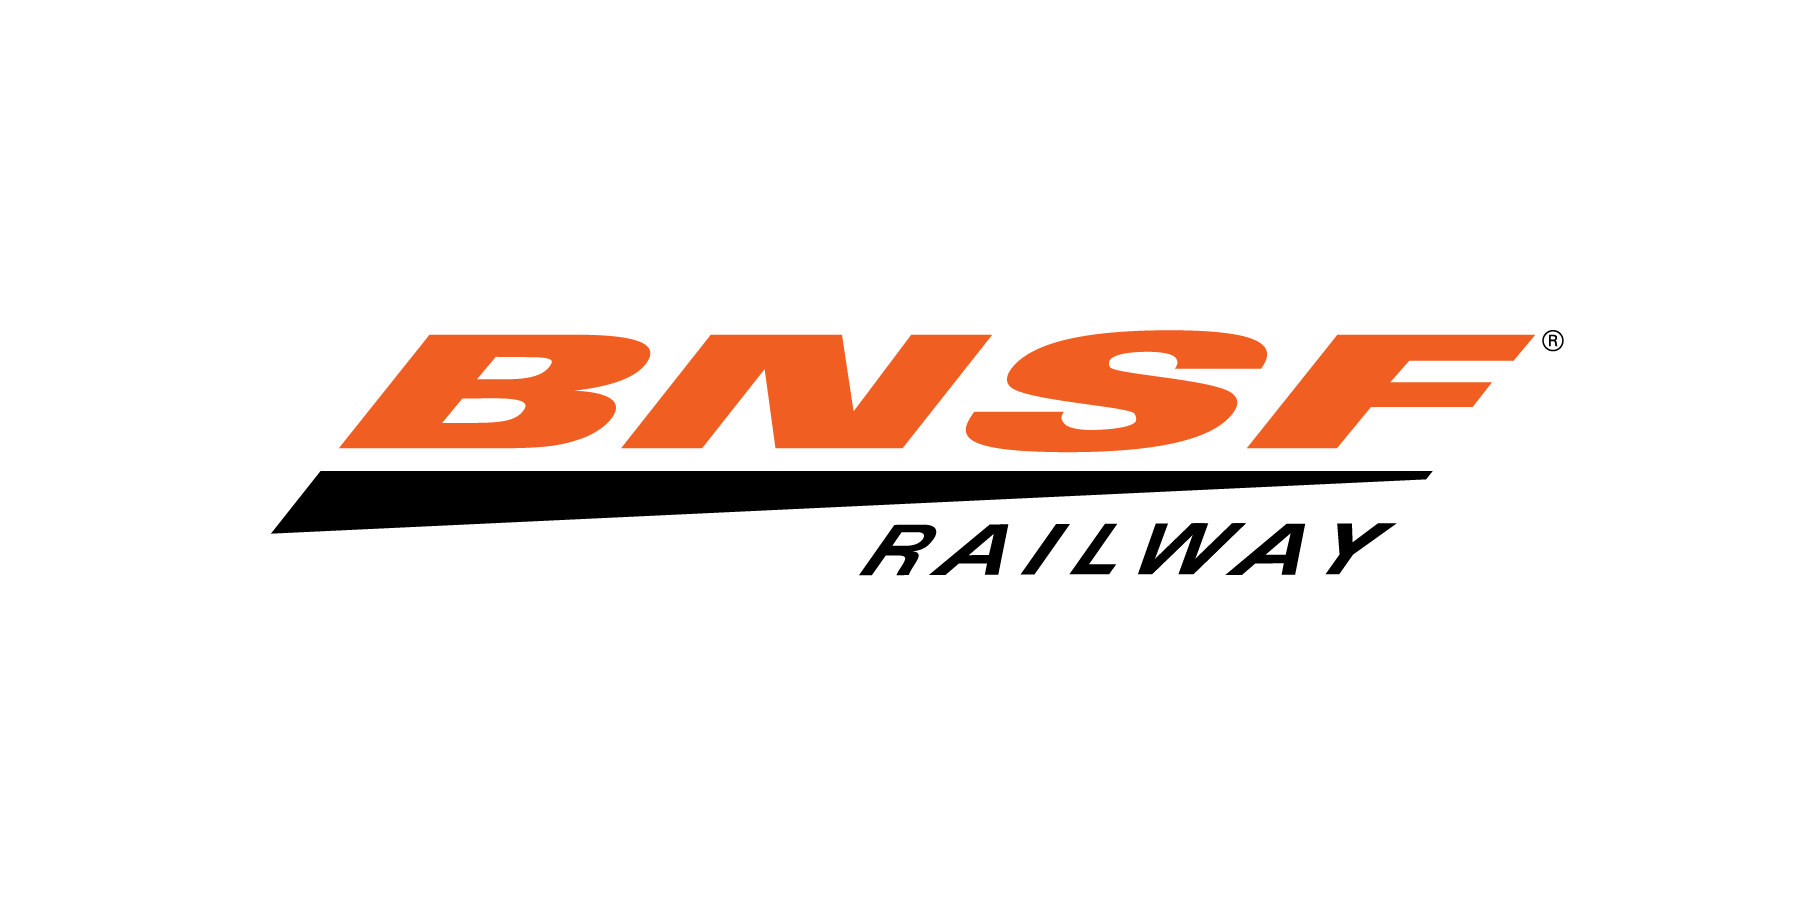 BNSF_Railway_Logo_CMYK